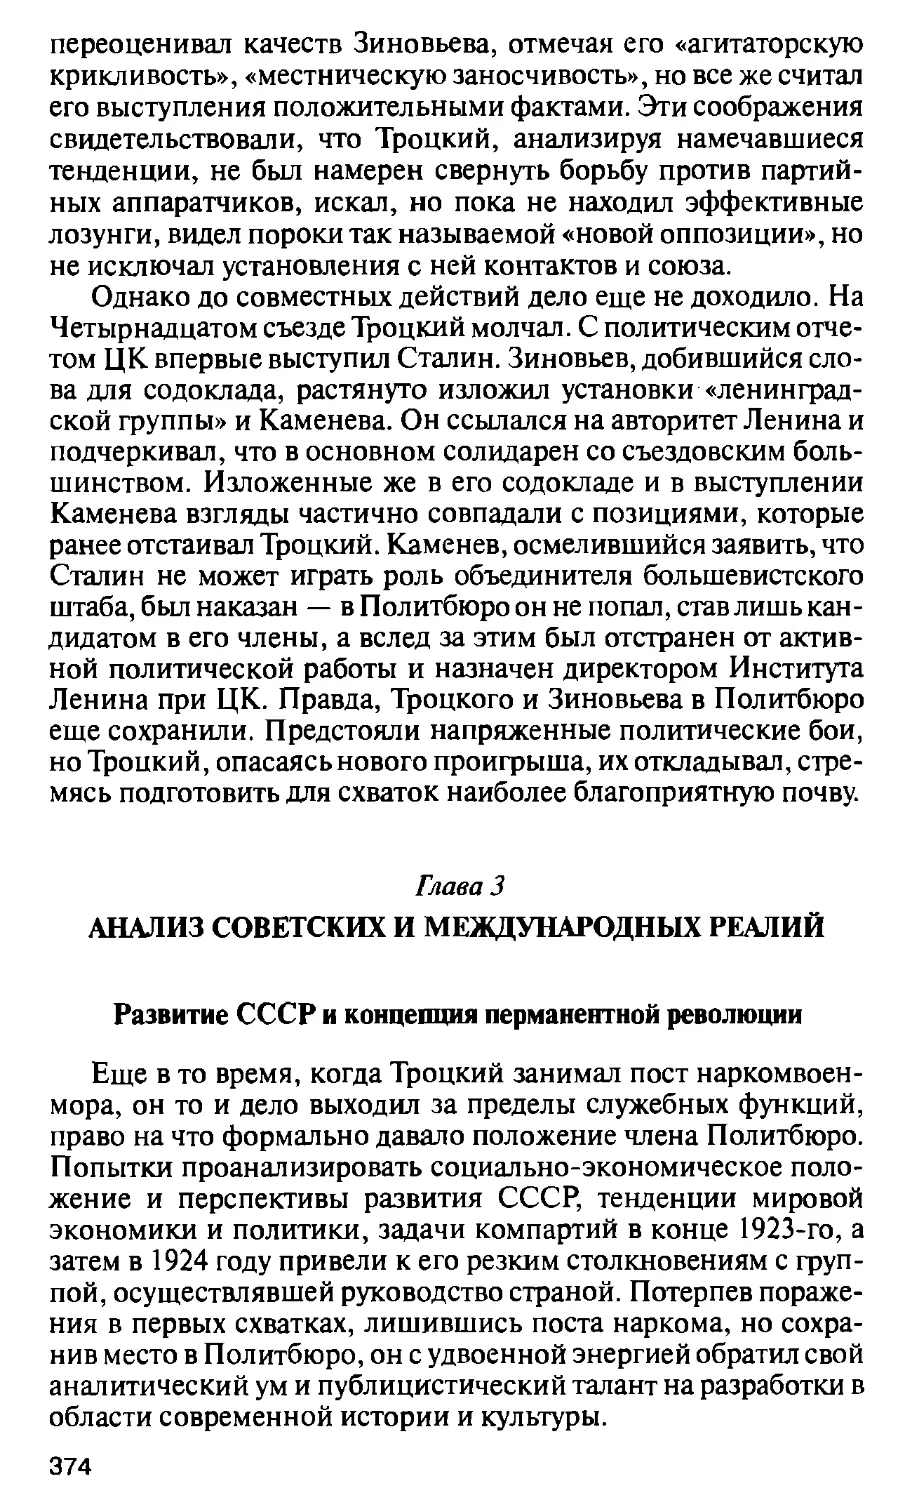 Глава 3. Анализ советских и международных реалий